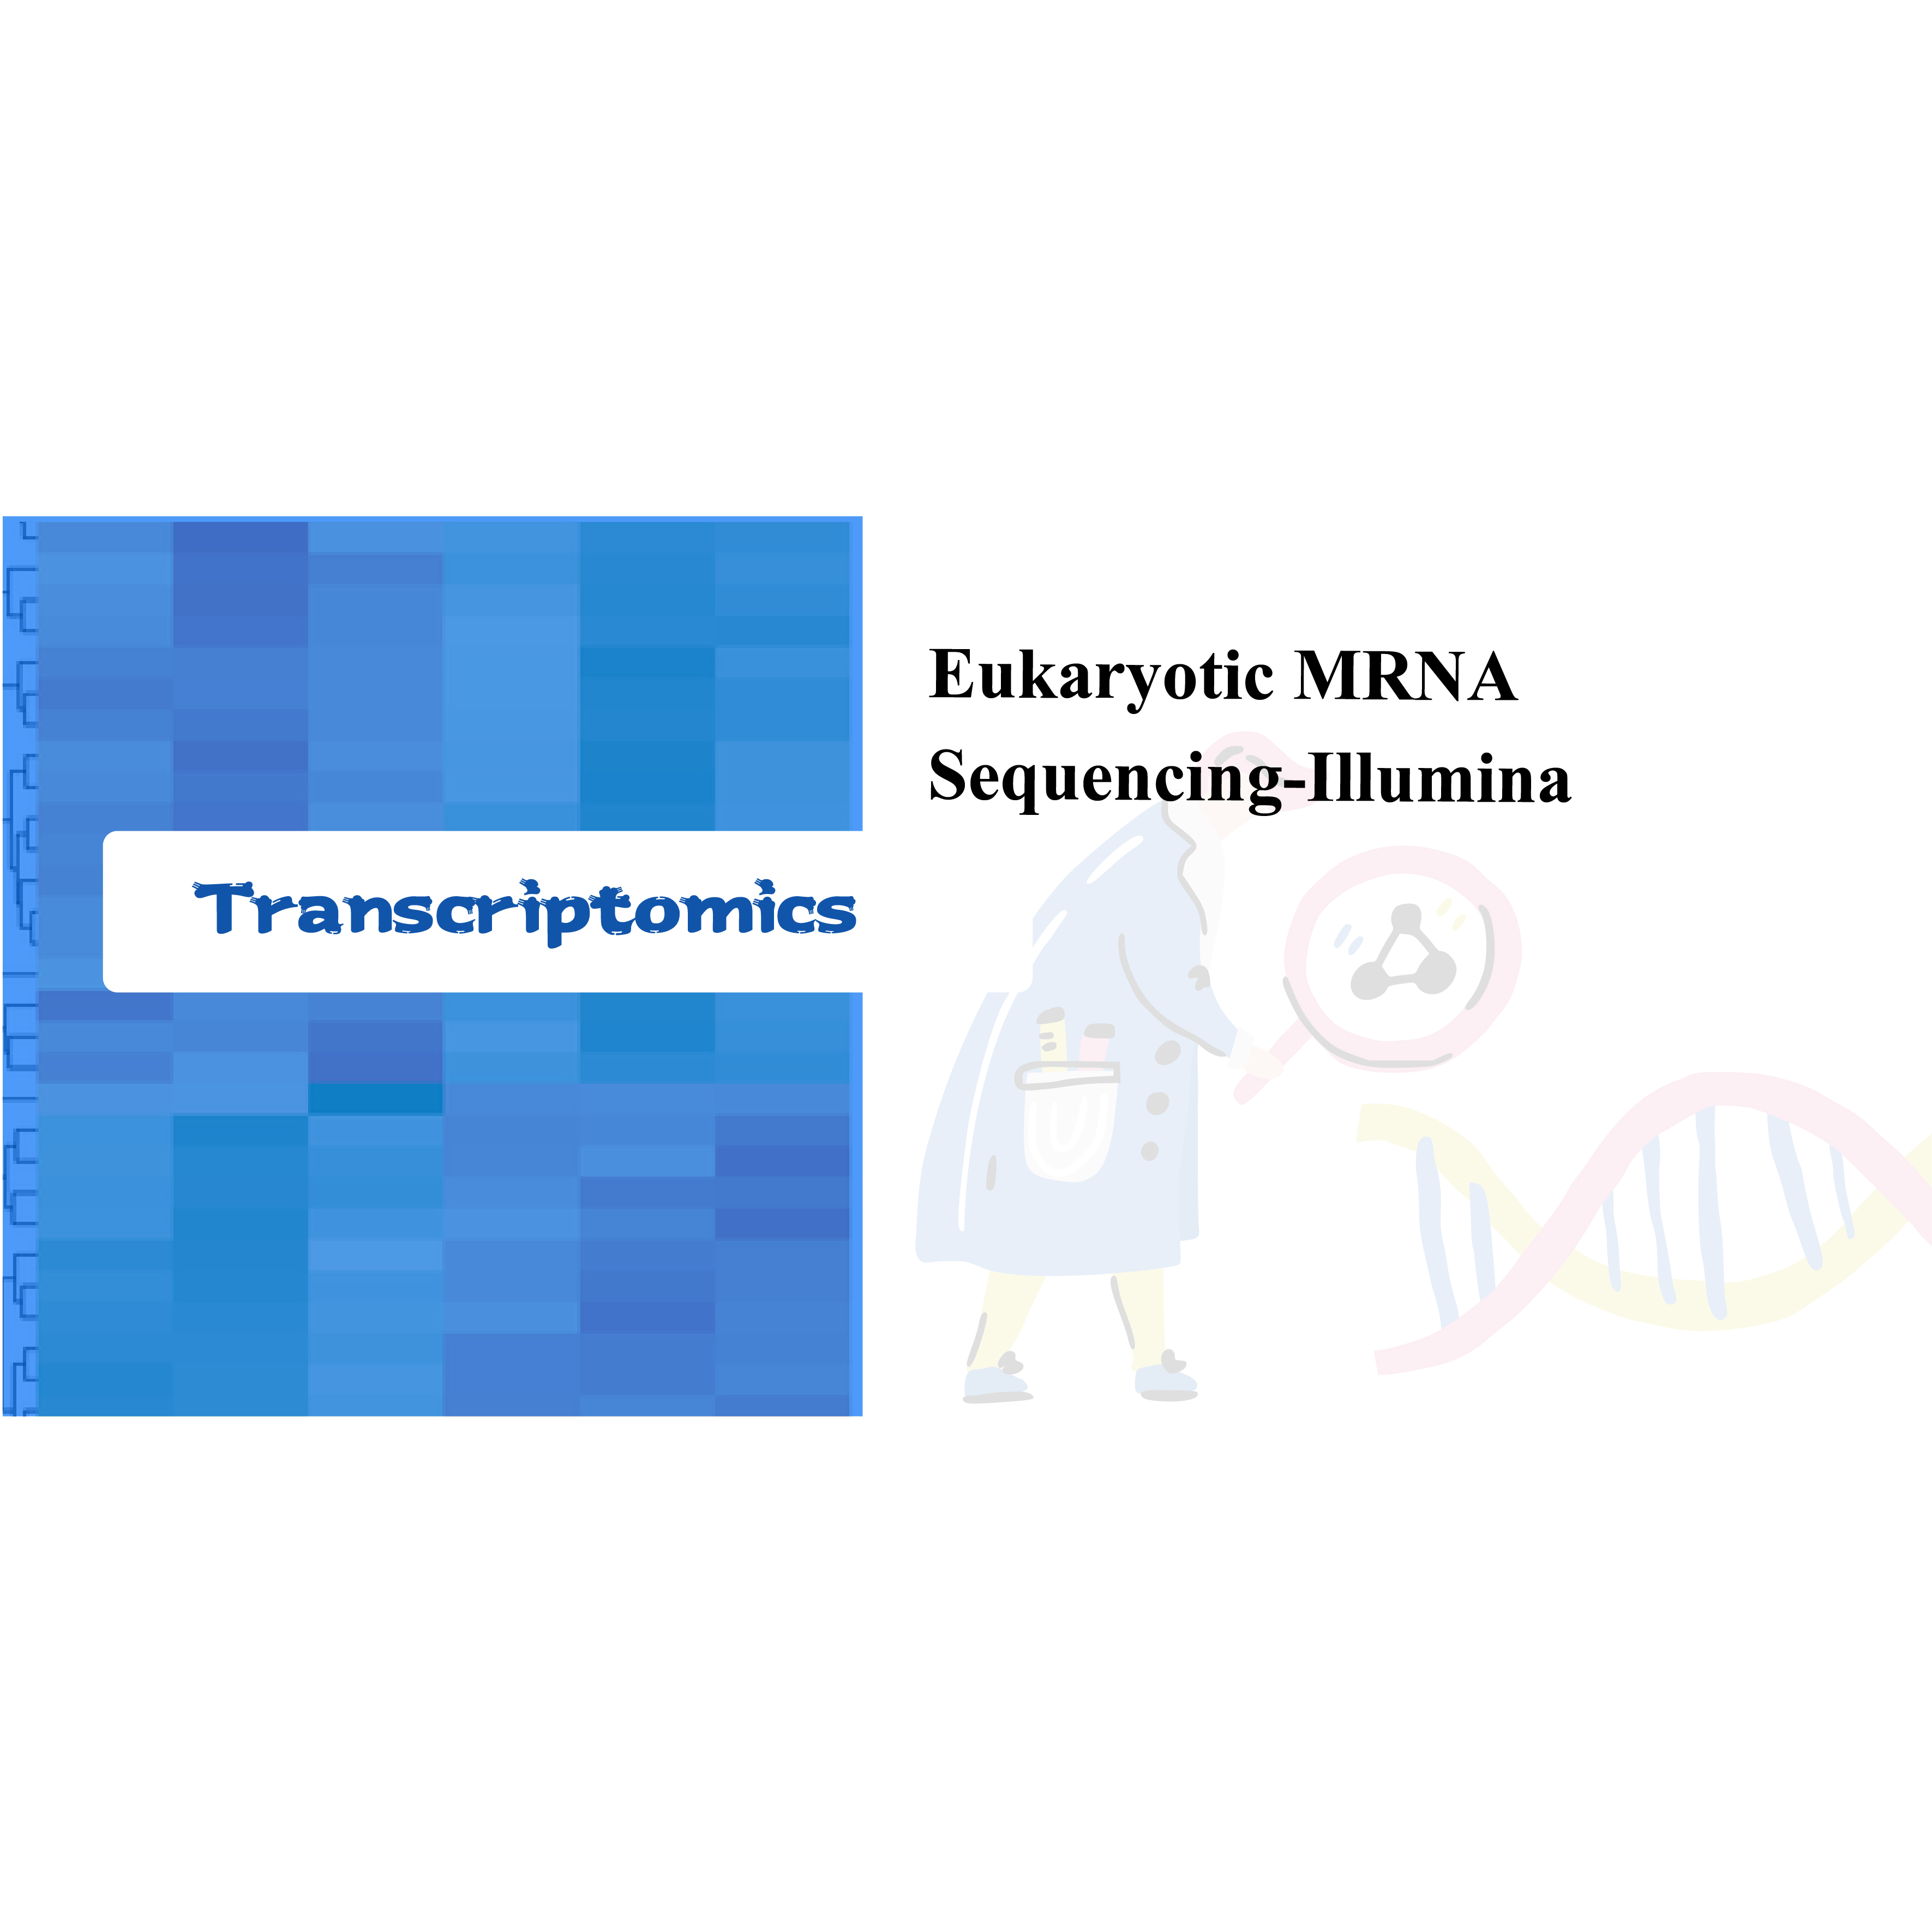 Sekvenování eukaryotické mRNA-Illumina